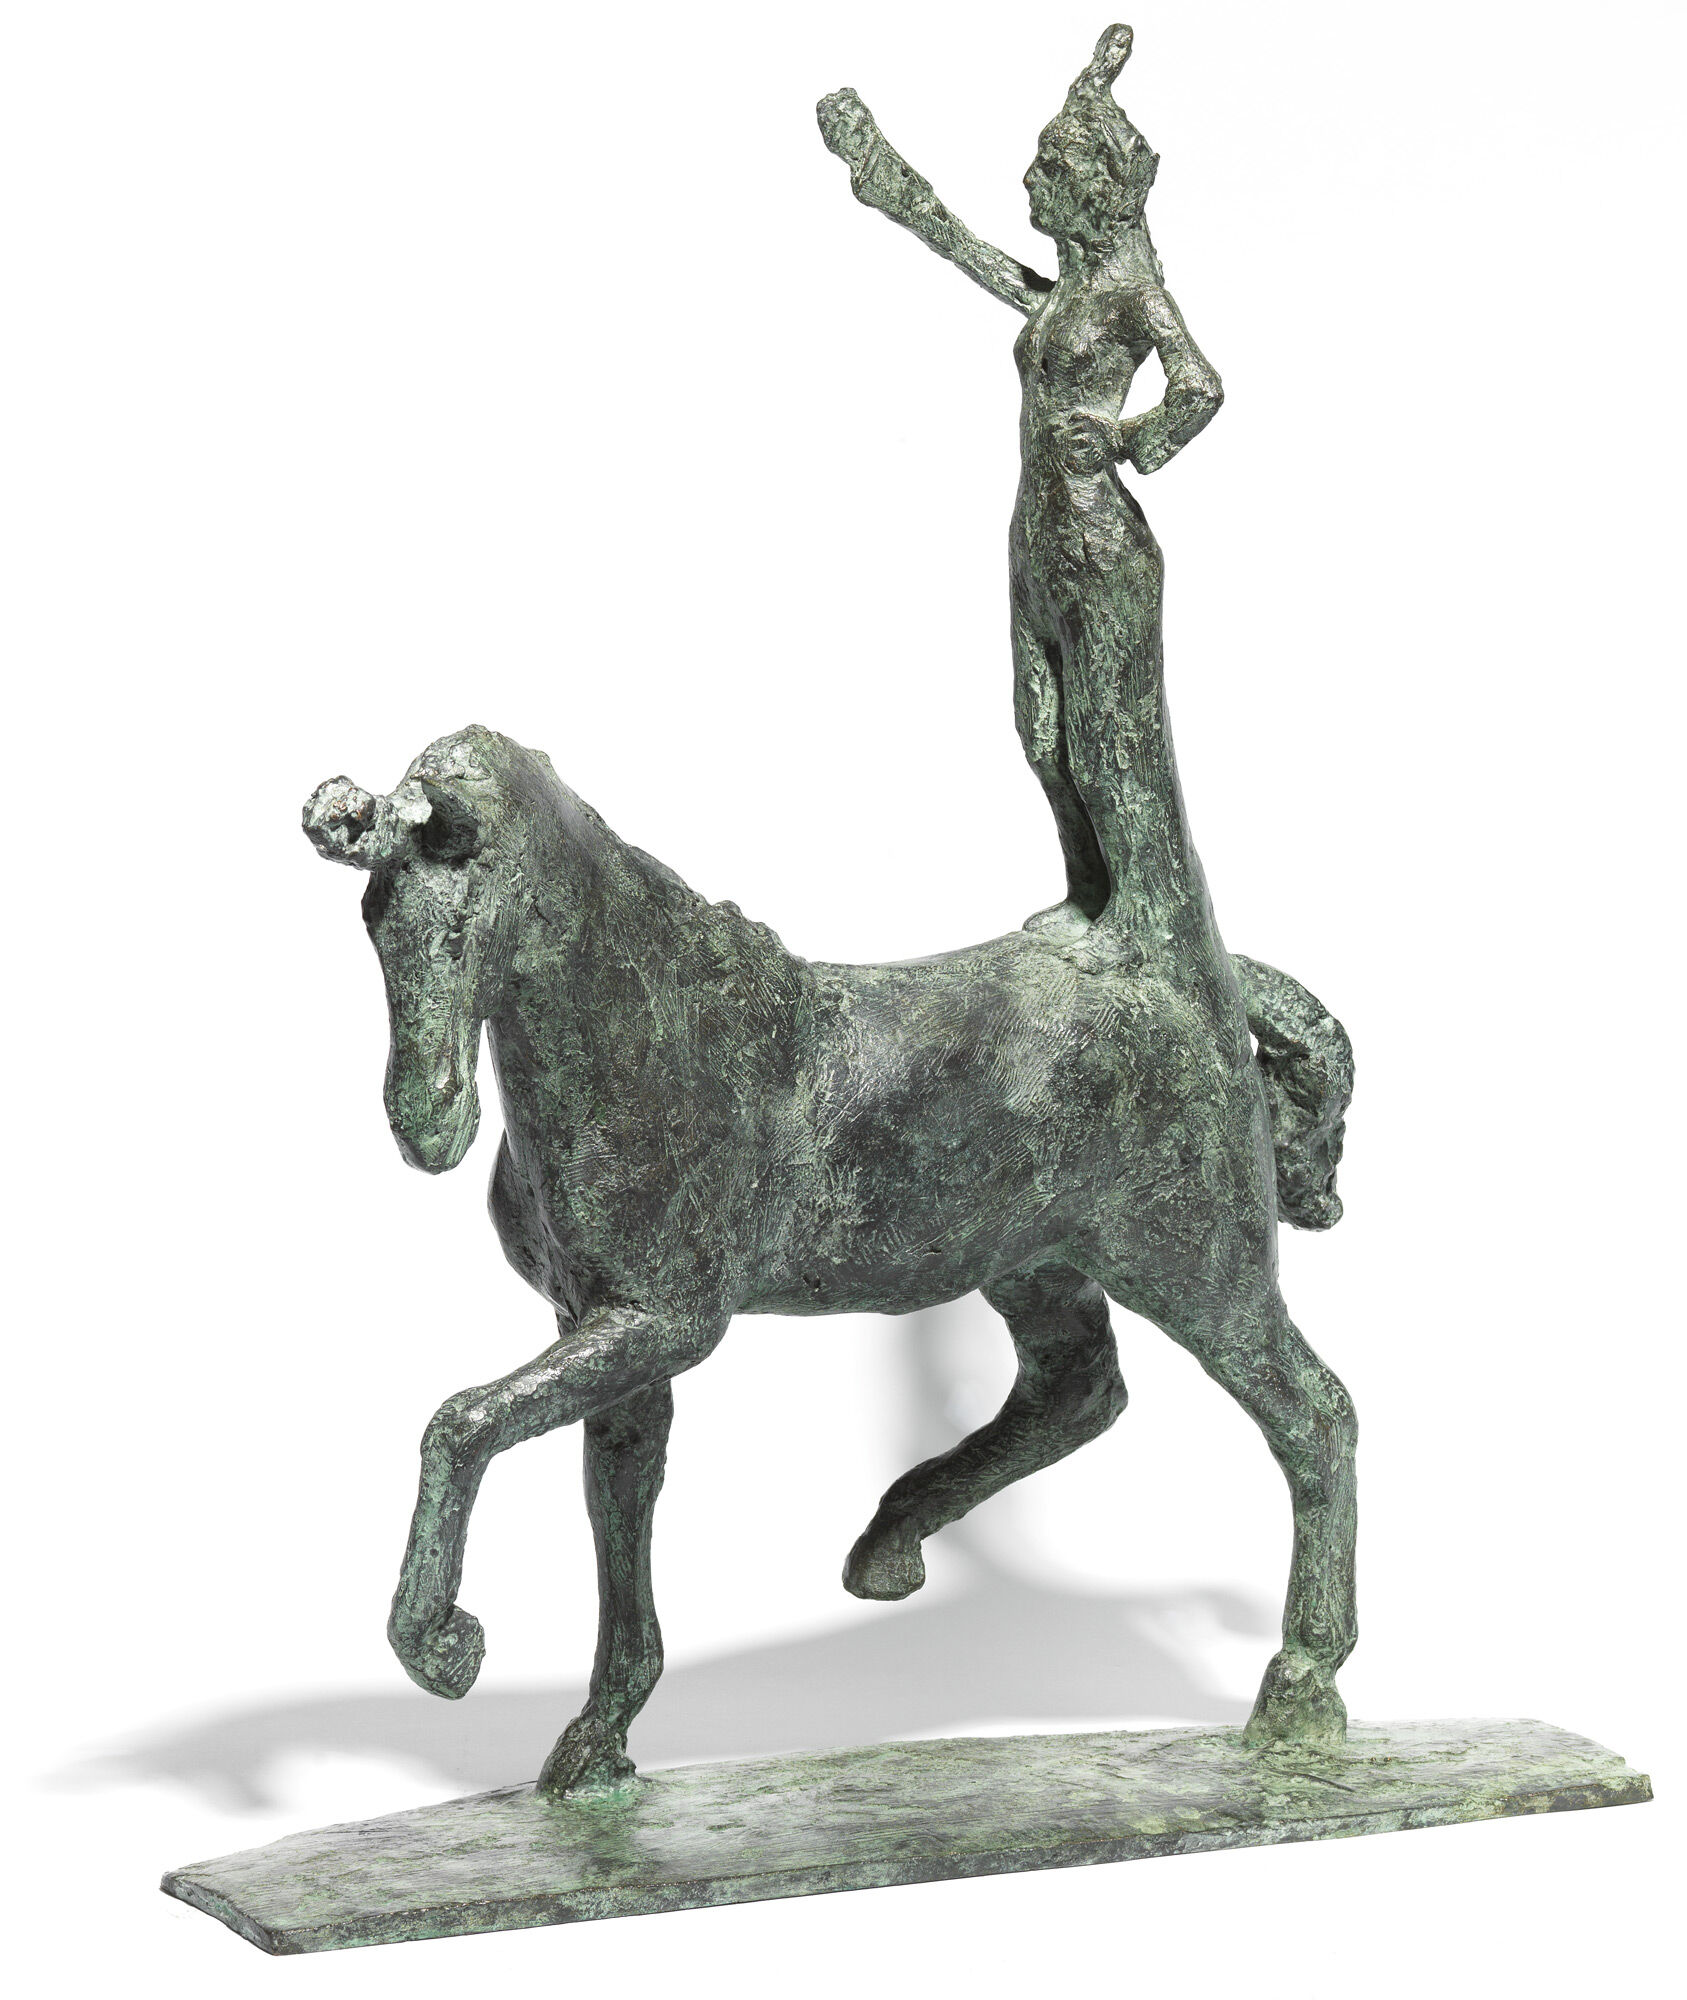 Sculpture "Little Trick Rider" (2019), bronze by Thomas Jastram